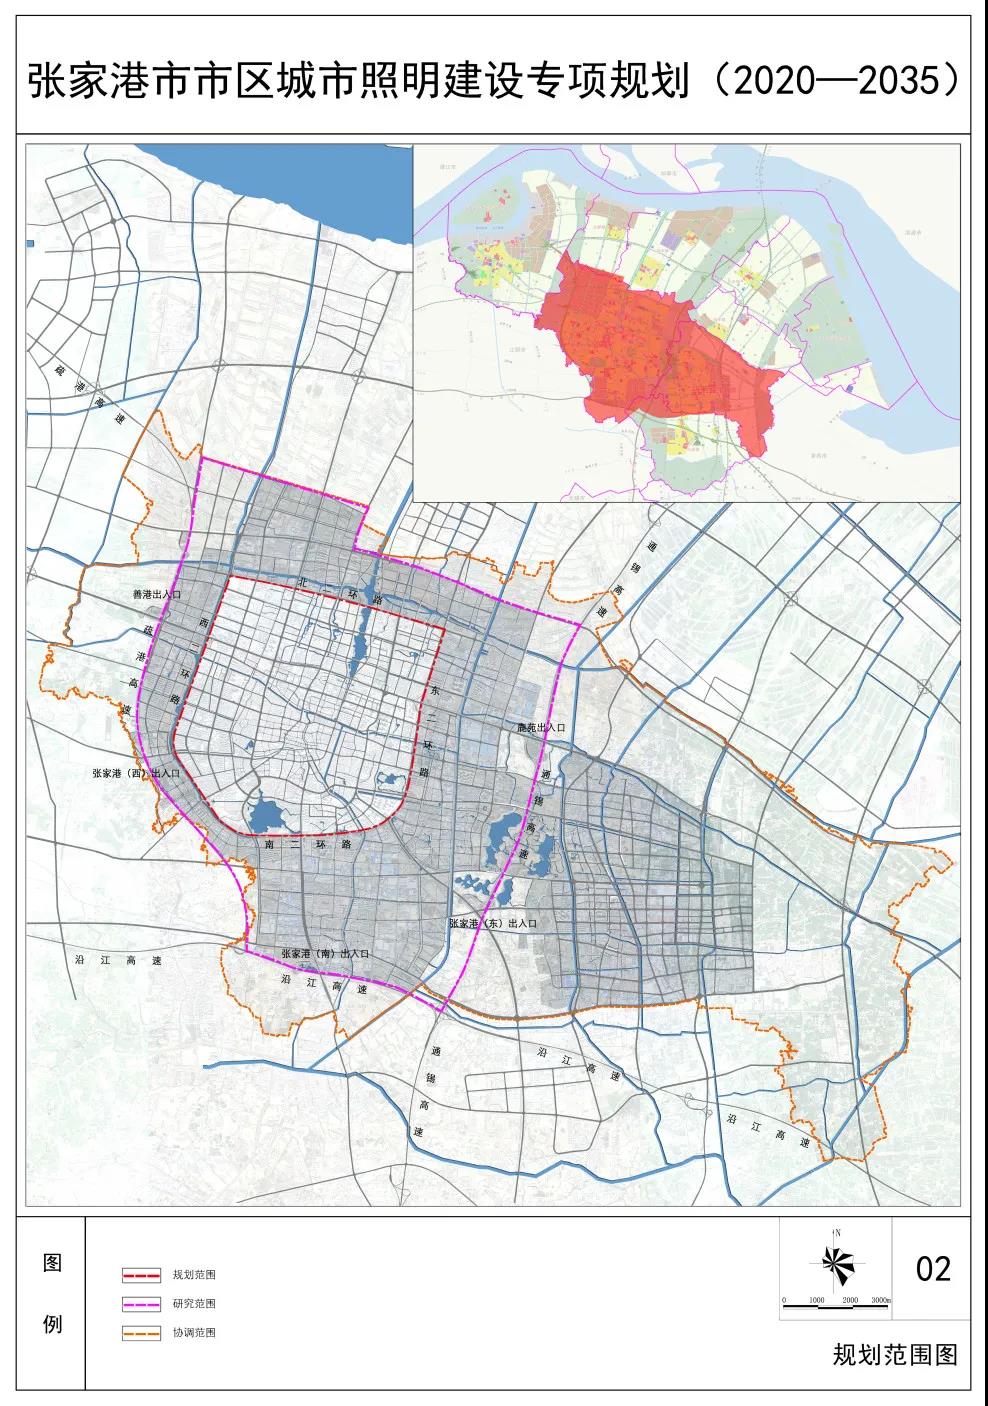 《张家港市市区城市照明建设专项规划（2020-2035）》正式实施